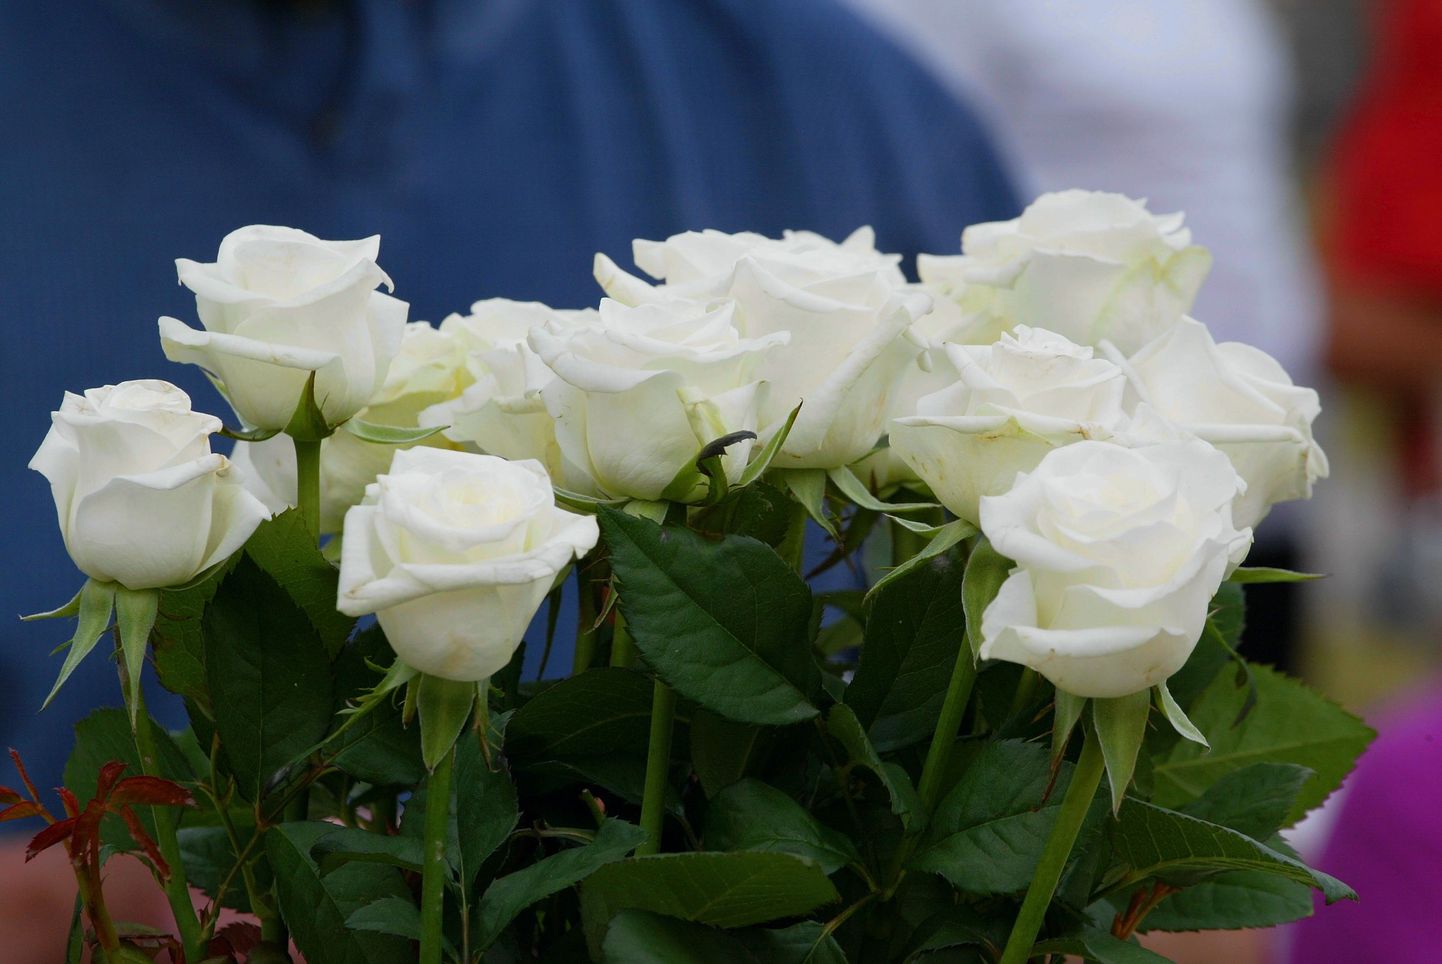 Viljandi jätkab valgete rooside istutamise traditsiooni.